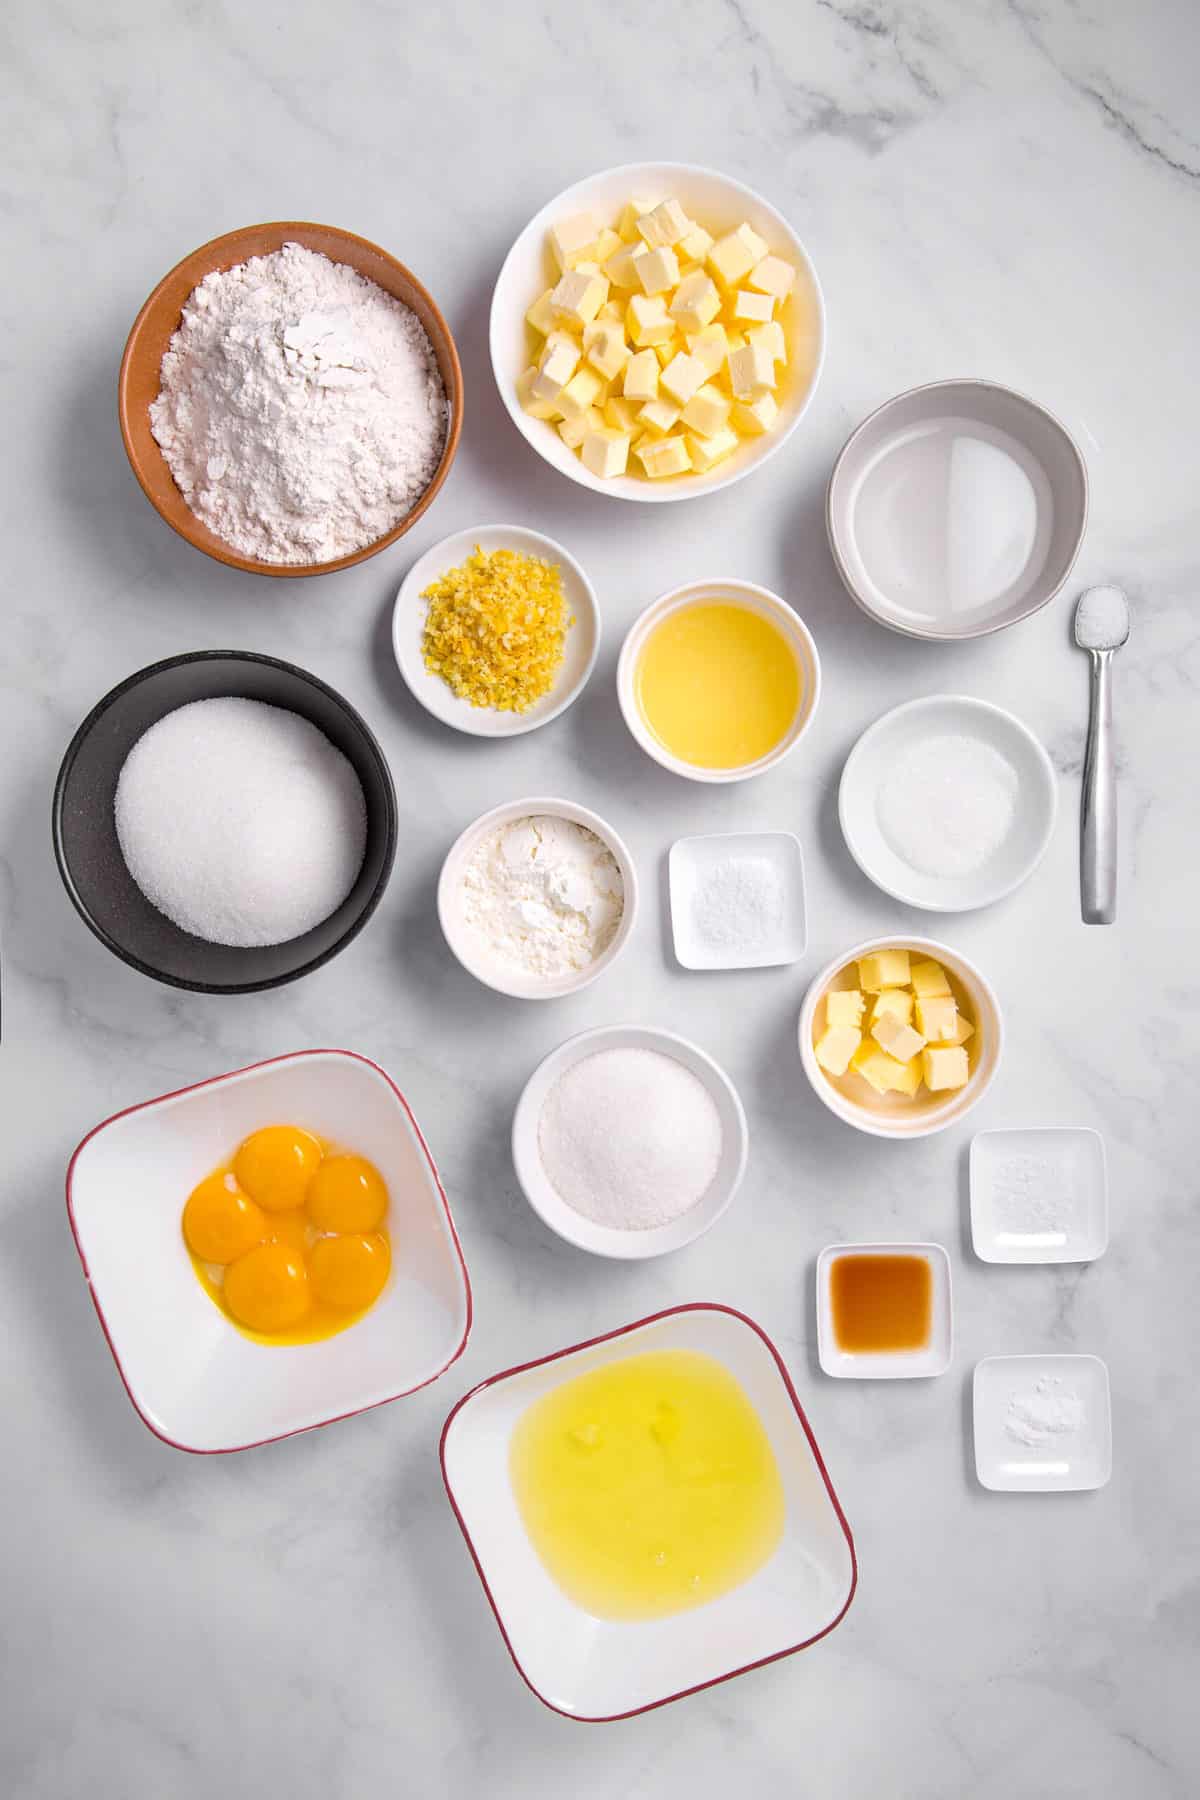 ingredients to make lemon meringue pie